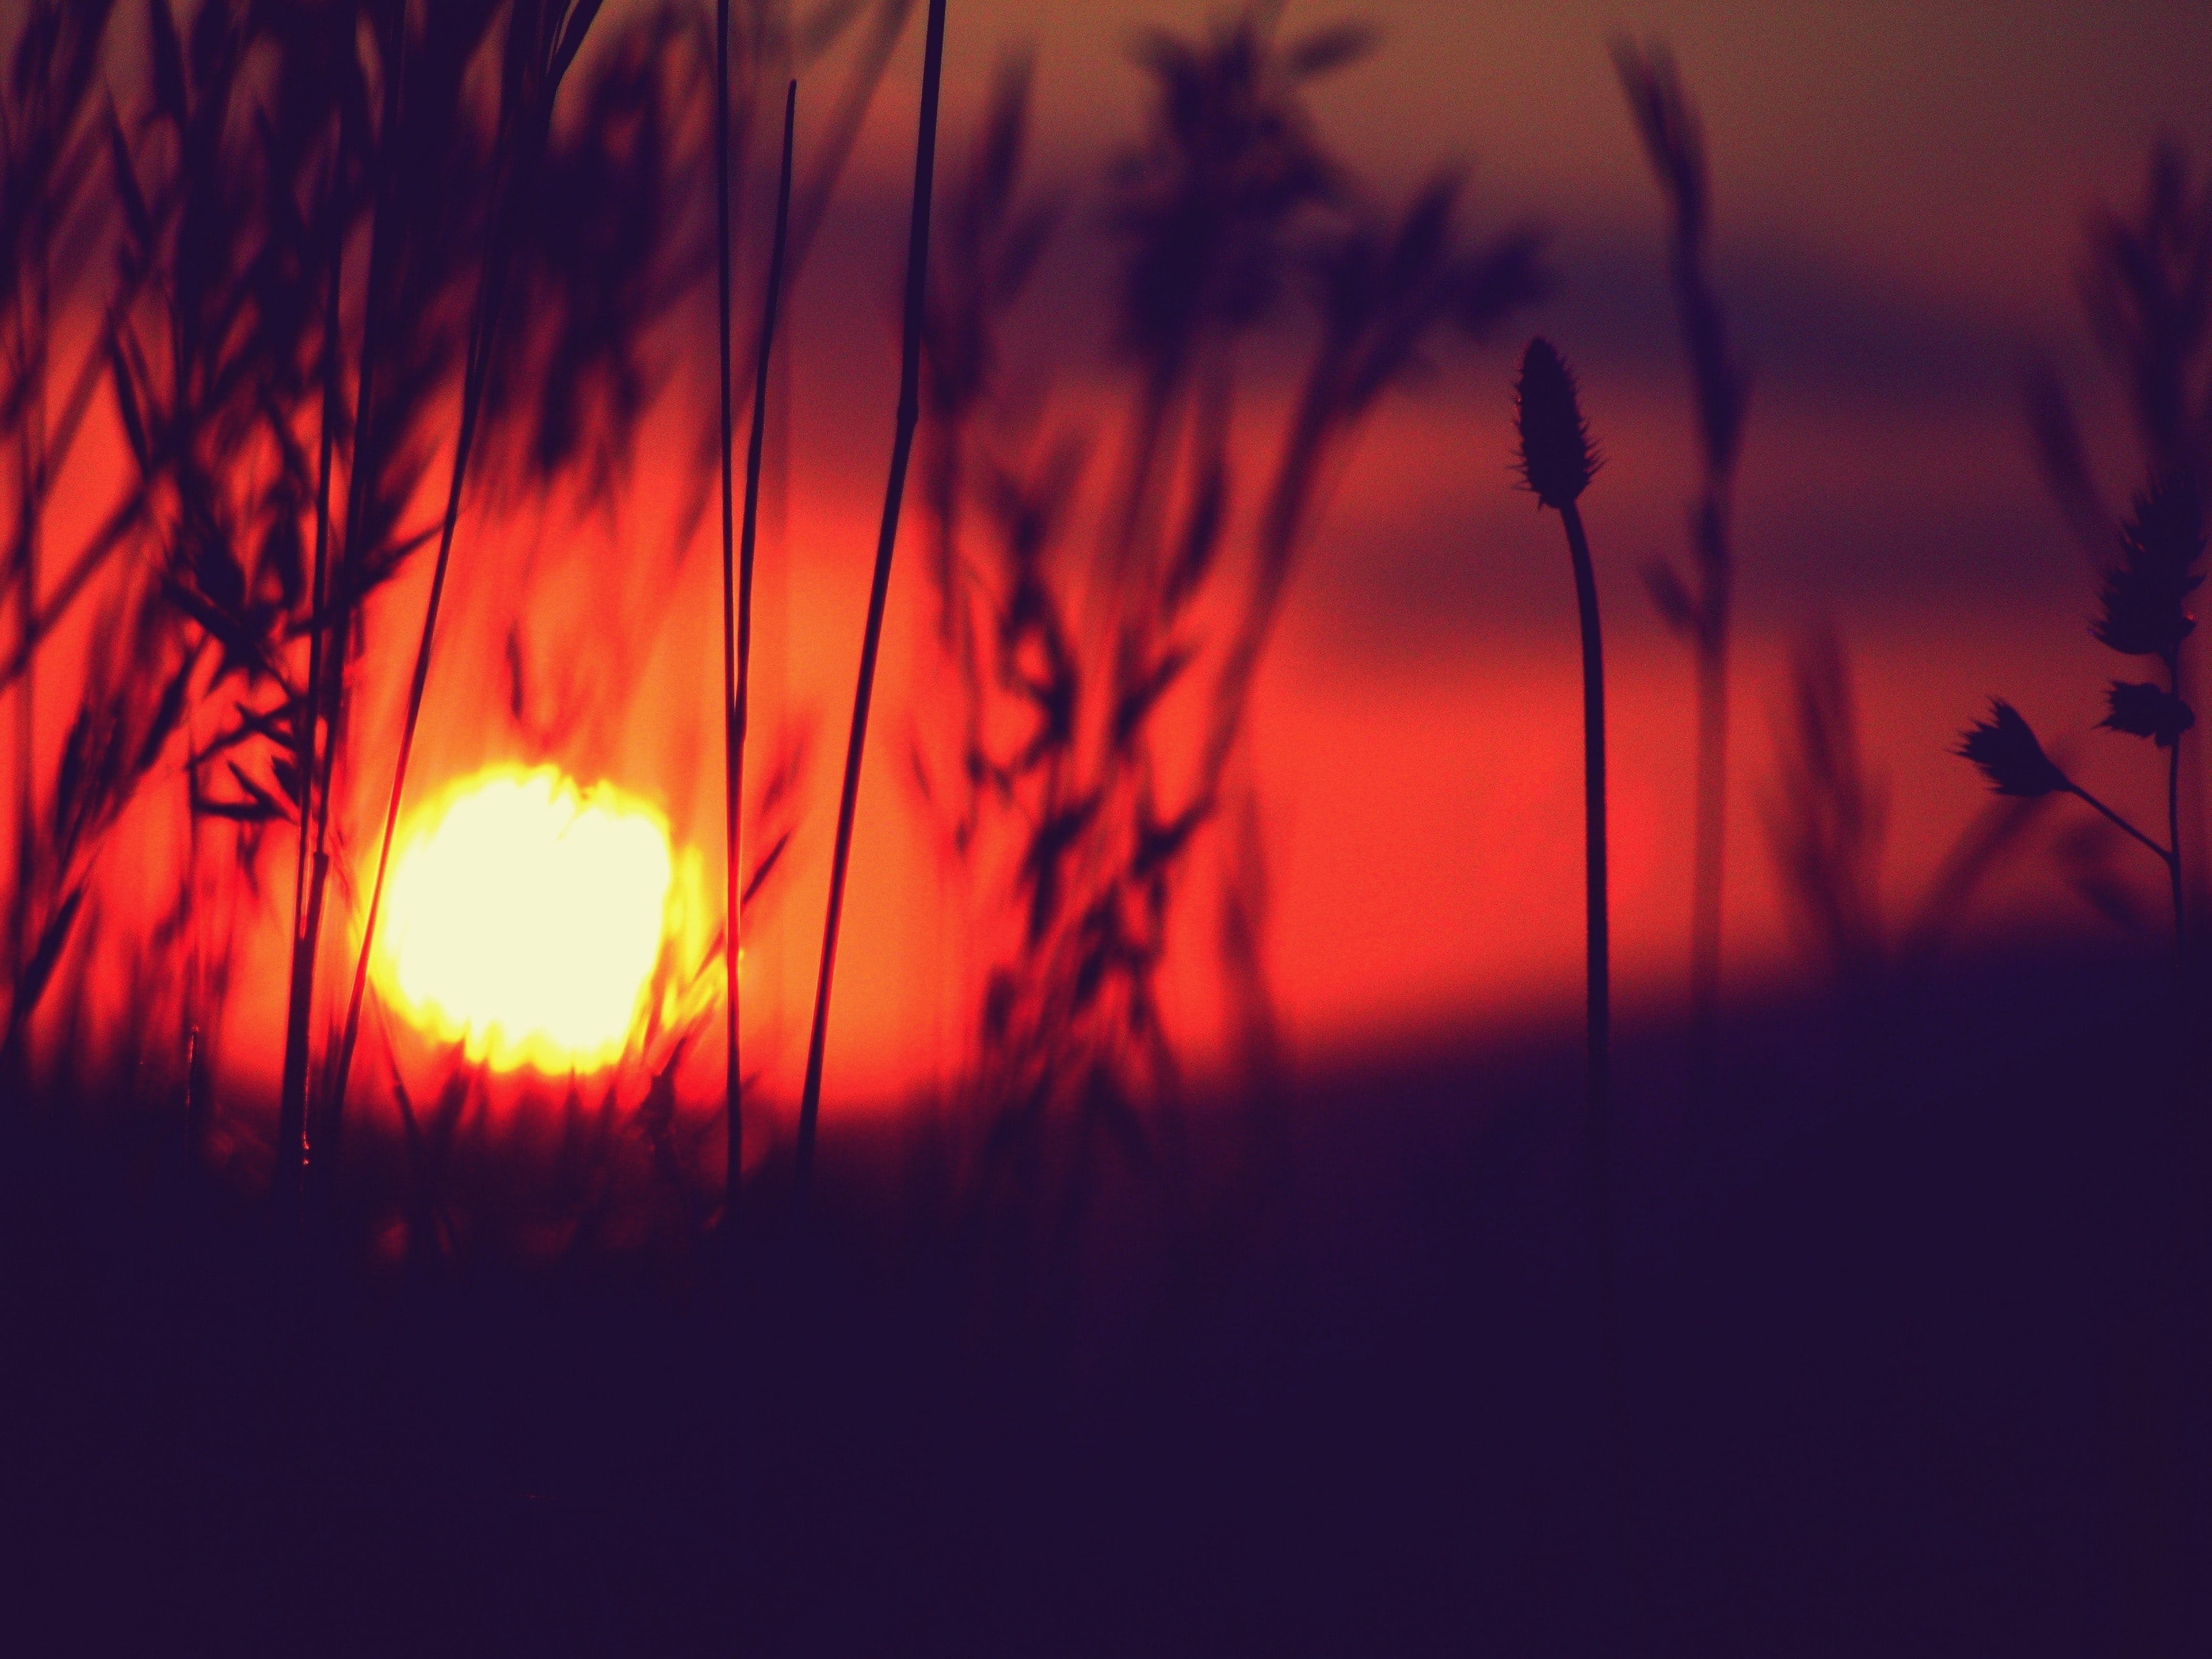 red sunset seen through grass